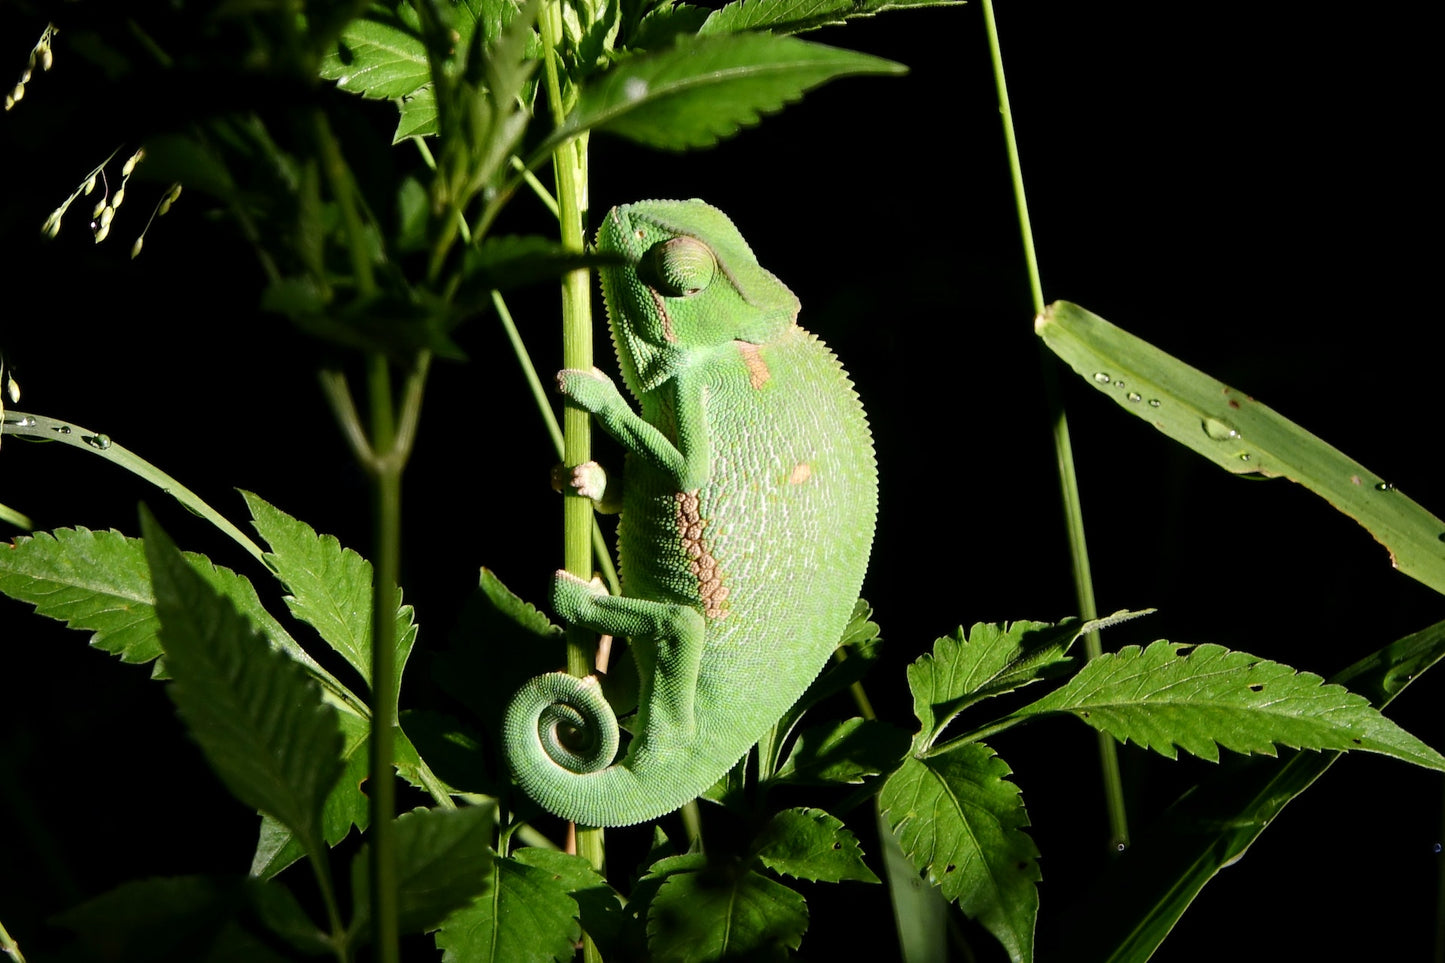 Juvenile Veiled Chameleons For Sale